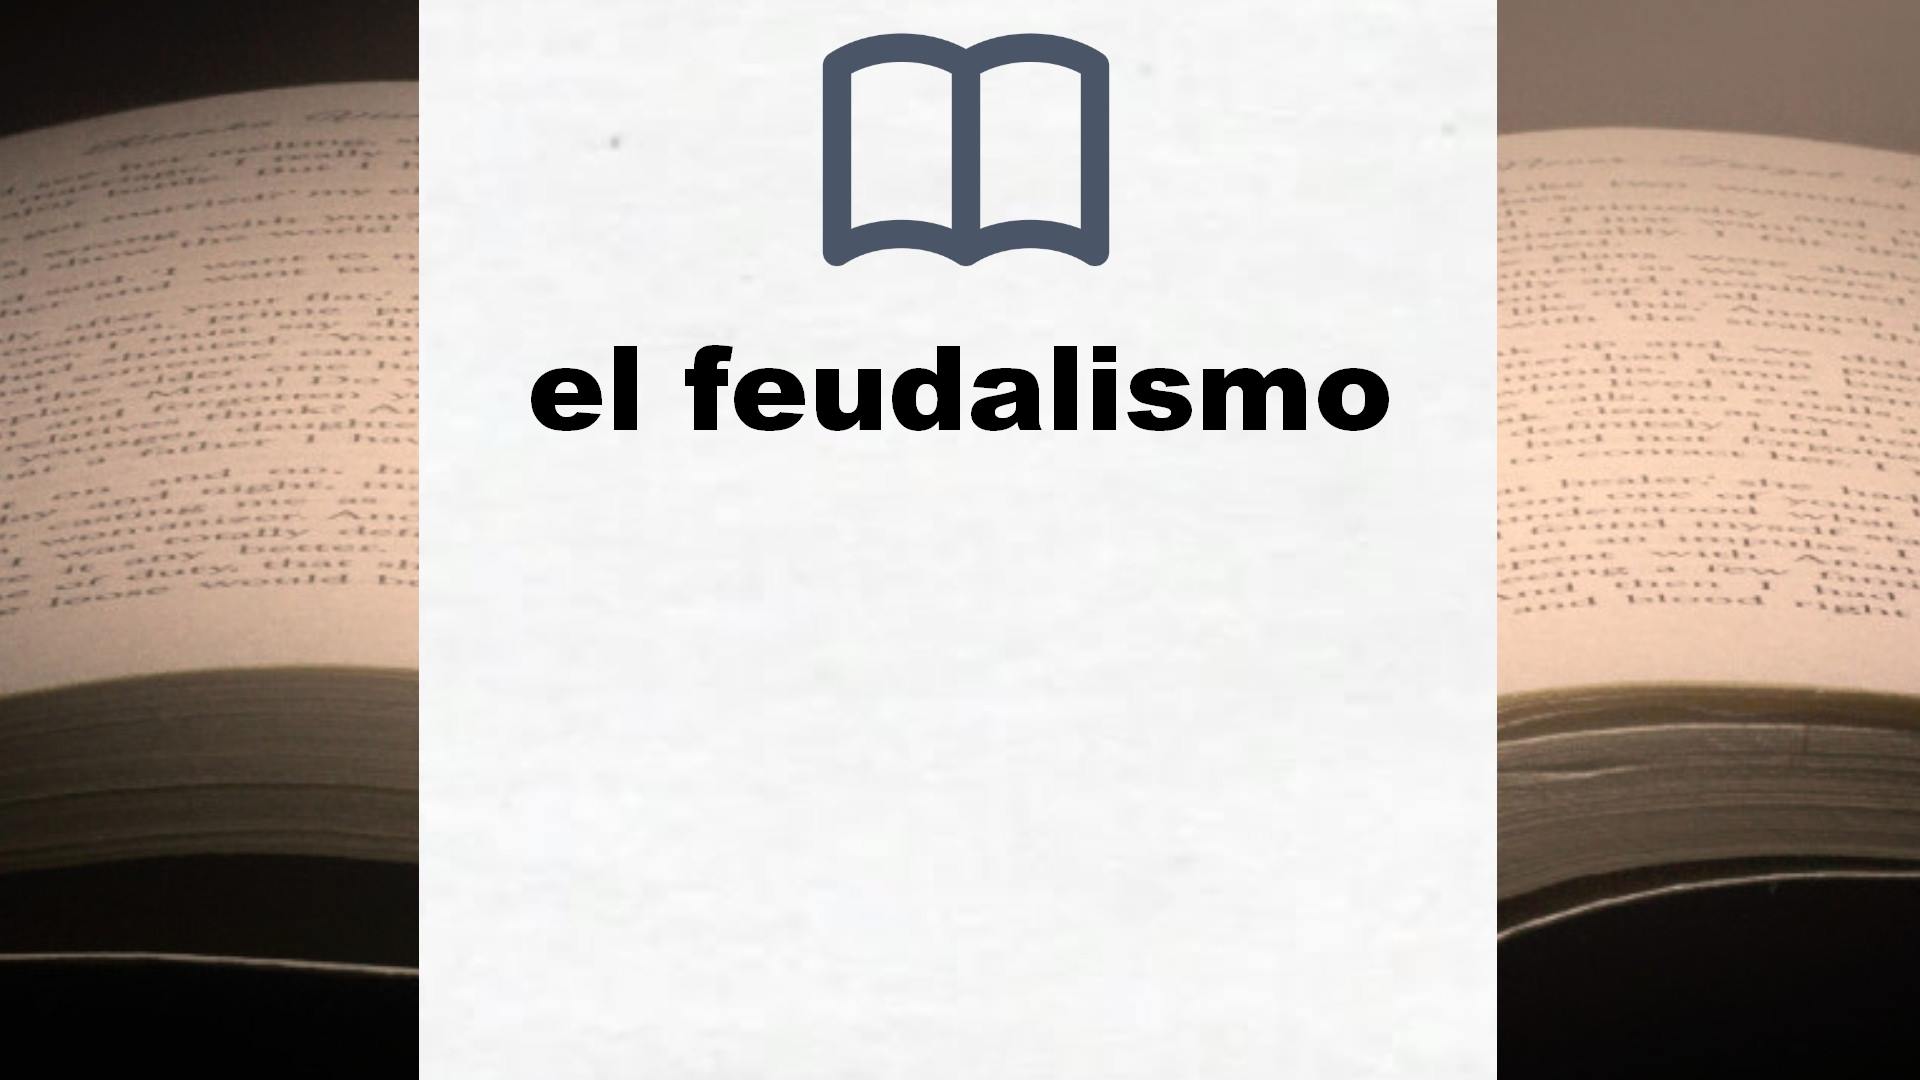 Libros sobre el feudalismo